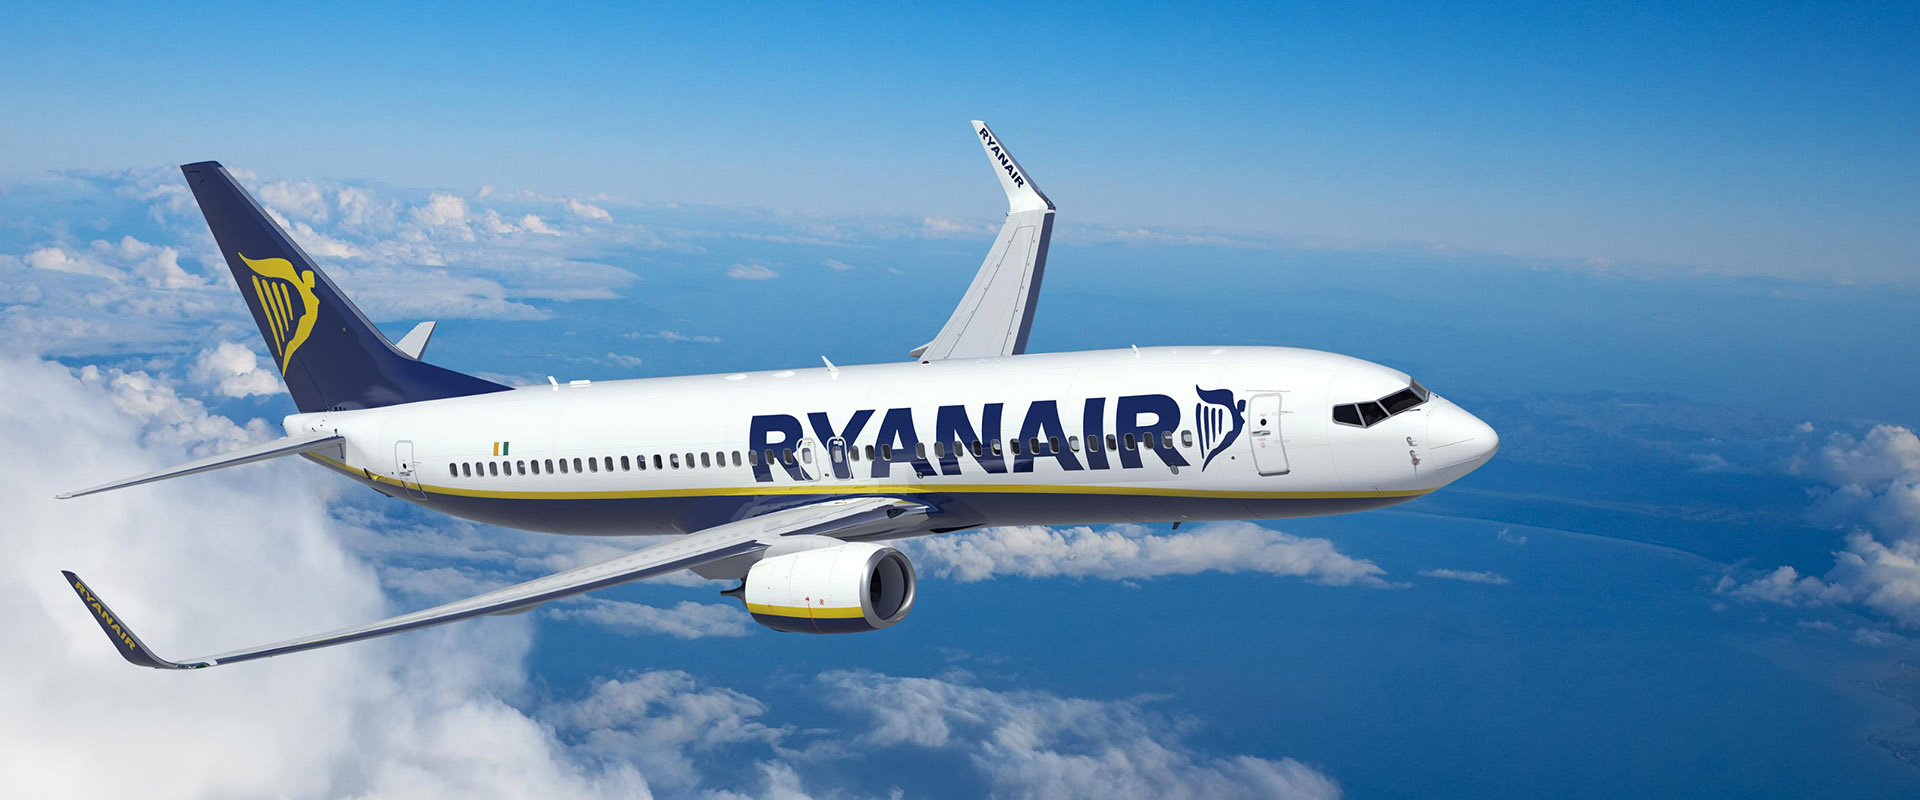 Η Μεγαλη Προσφορα “Million-Air” Της Ryanair Για 24 Ωρες  1 Εκατομμυριο Θεσεις Μονο 9.99€